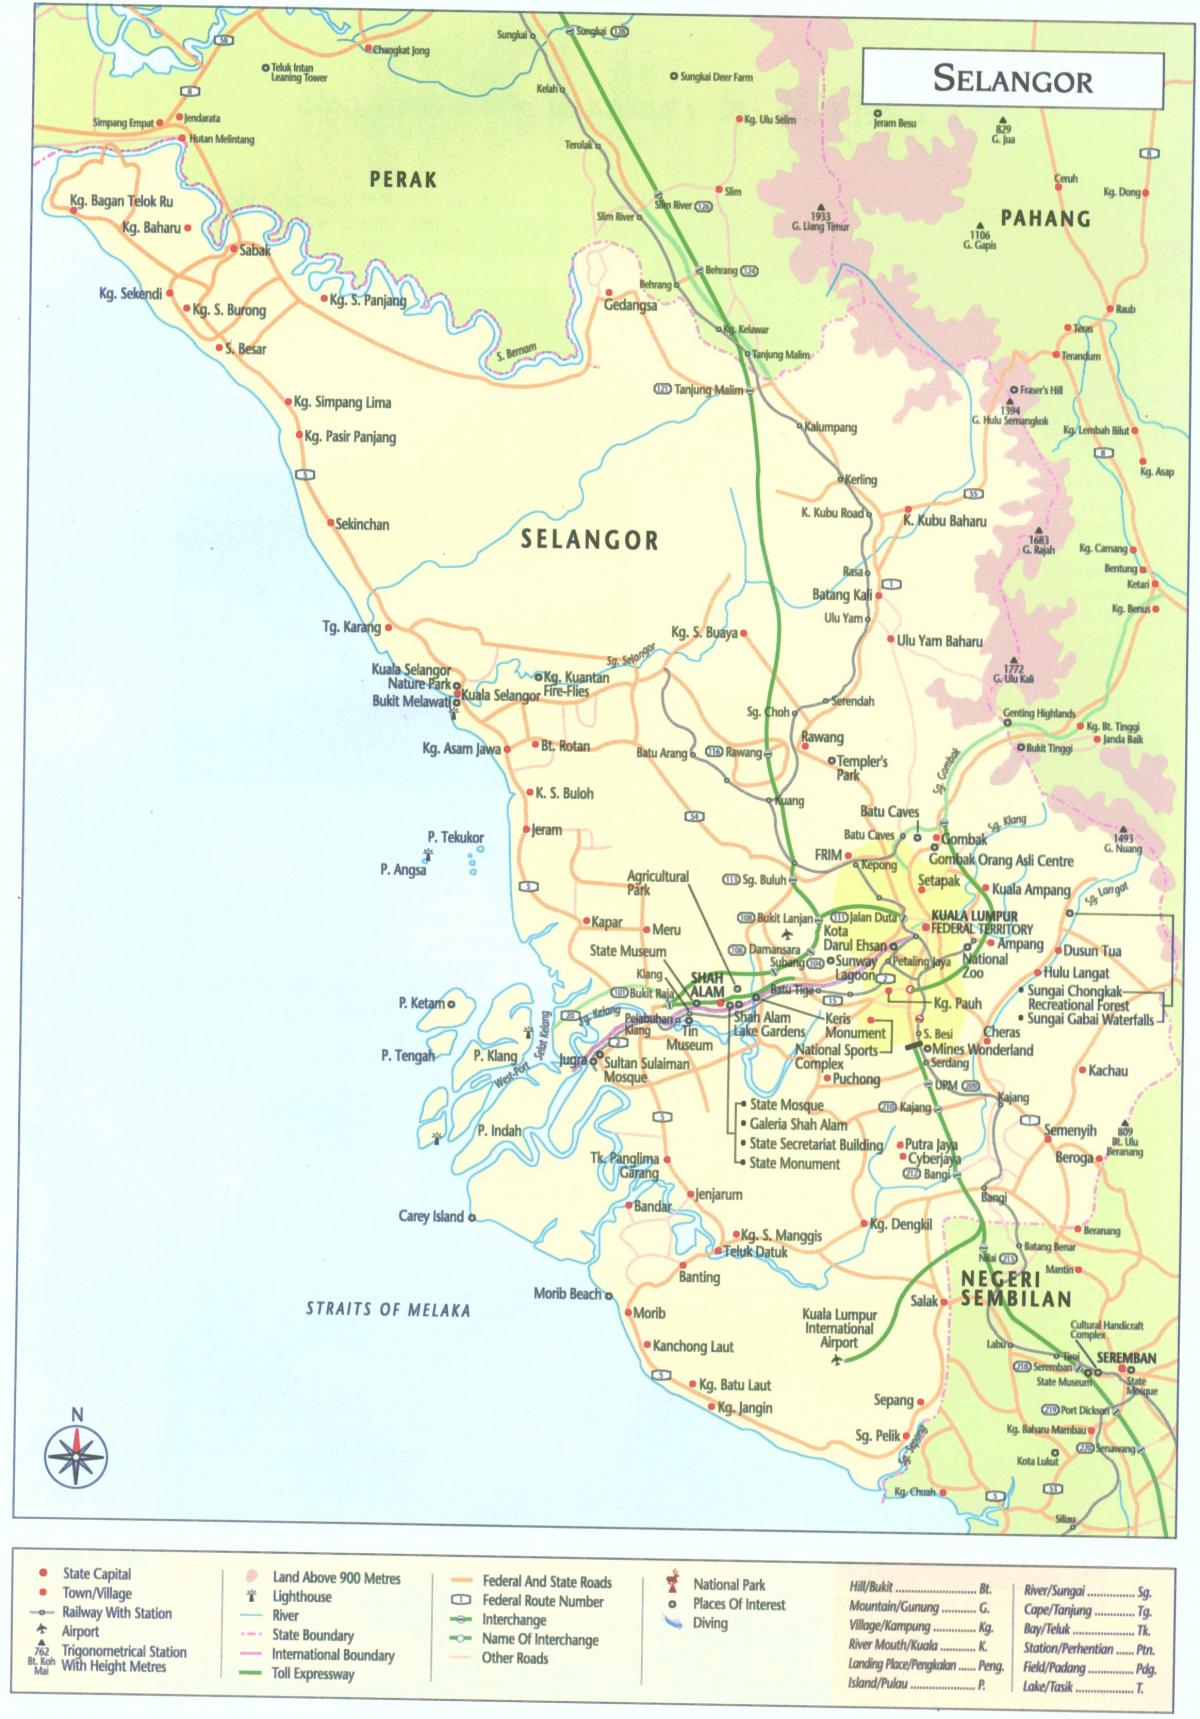 куала лумпур selangor газрын зураг